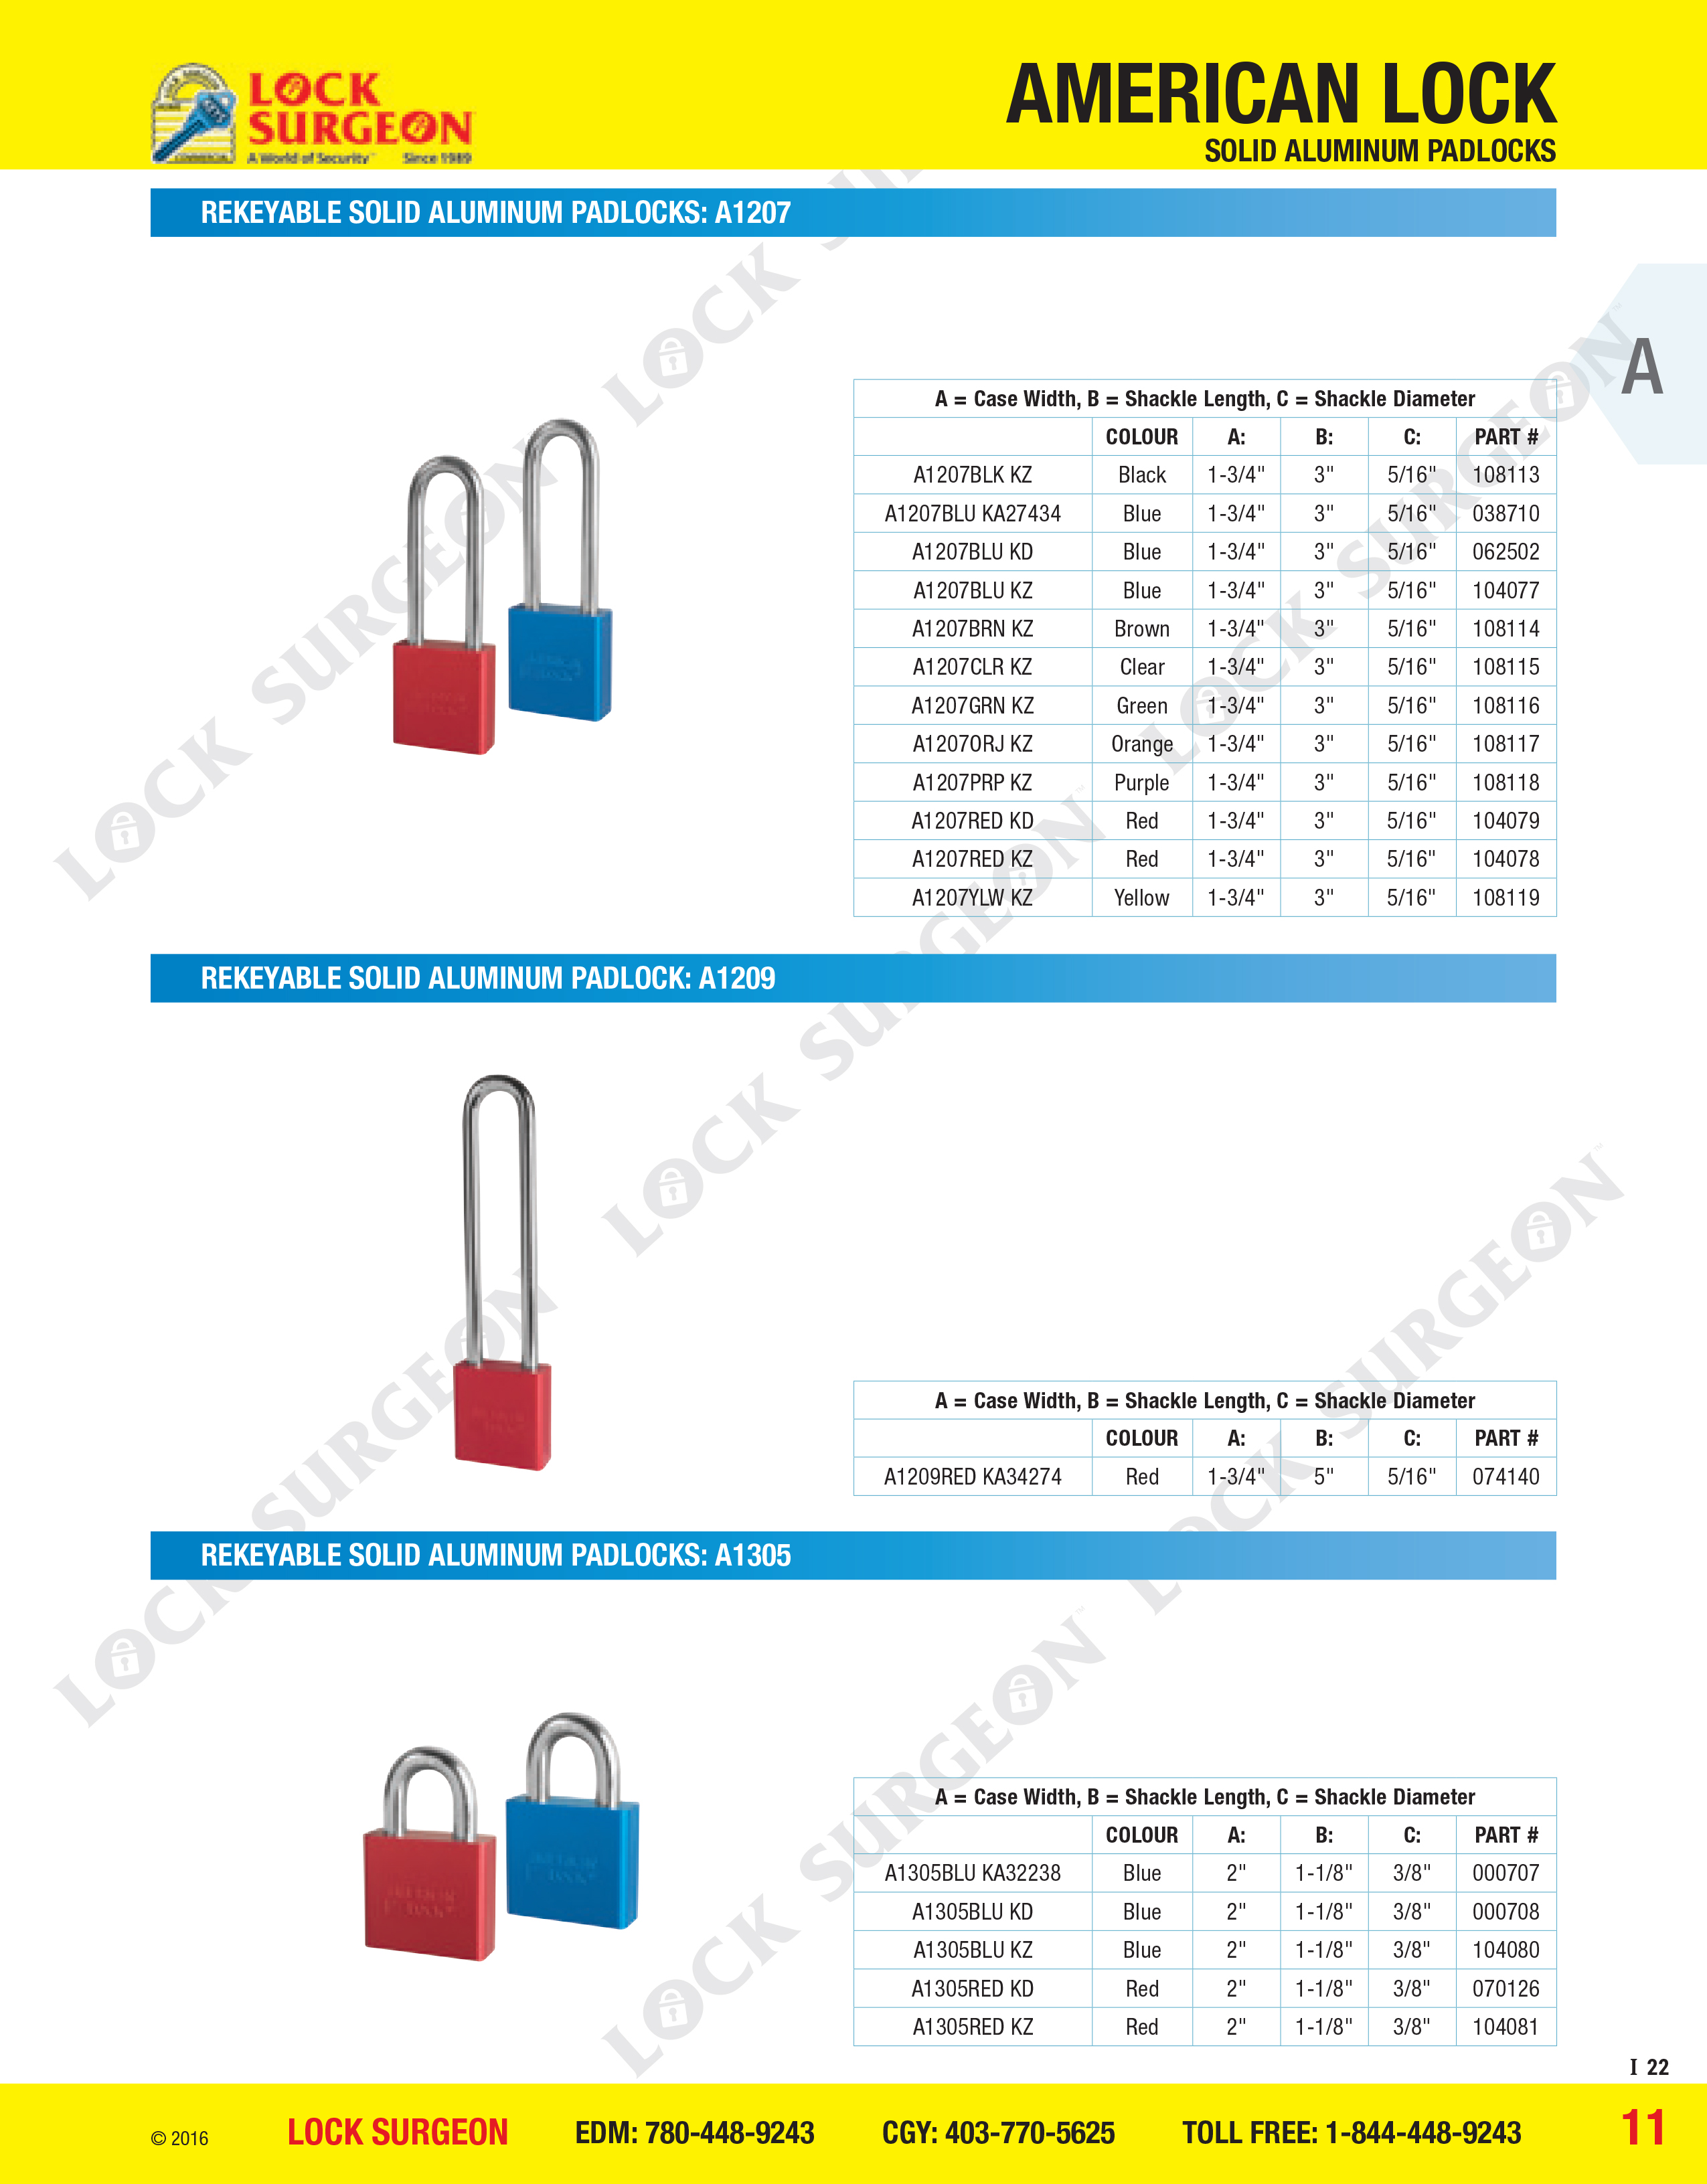 American Lock Rekeyable solid aluminium padlocks A1207, A1209 or A1305 series